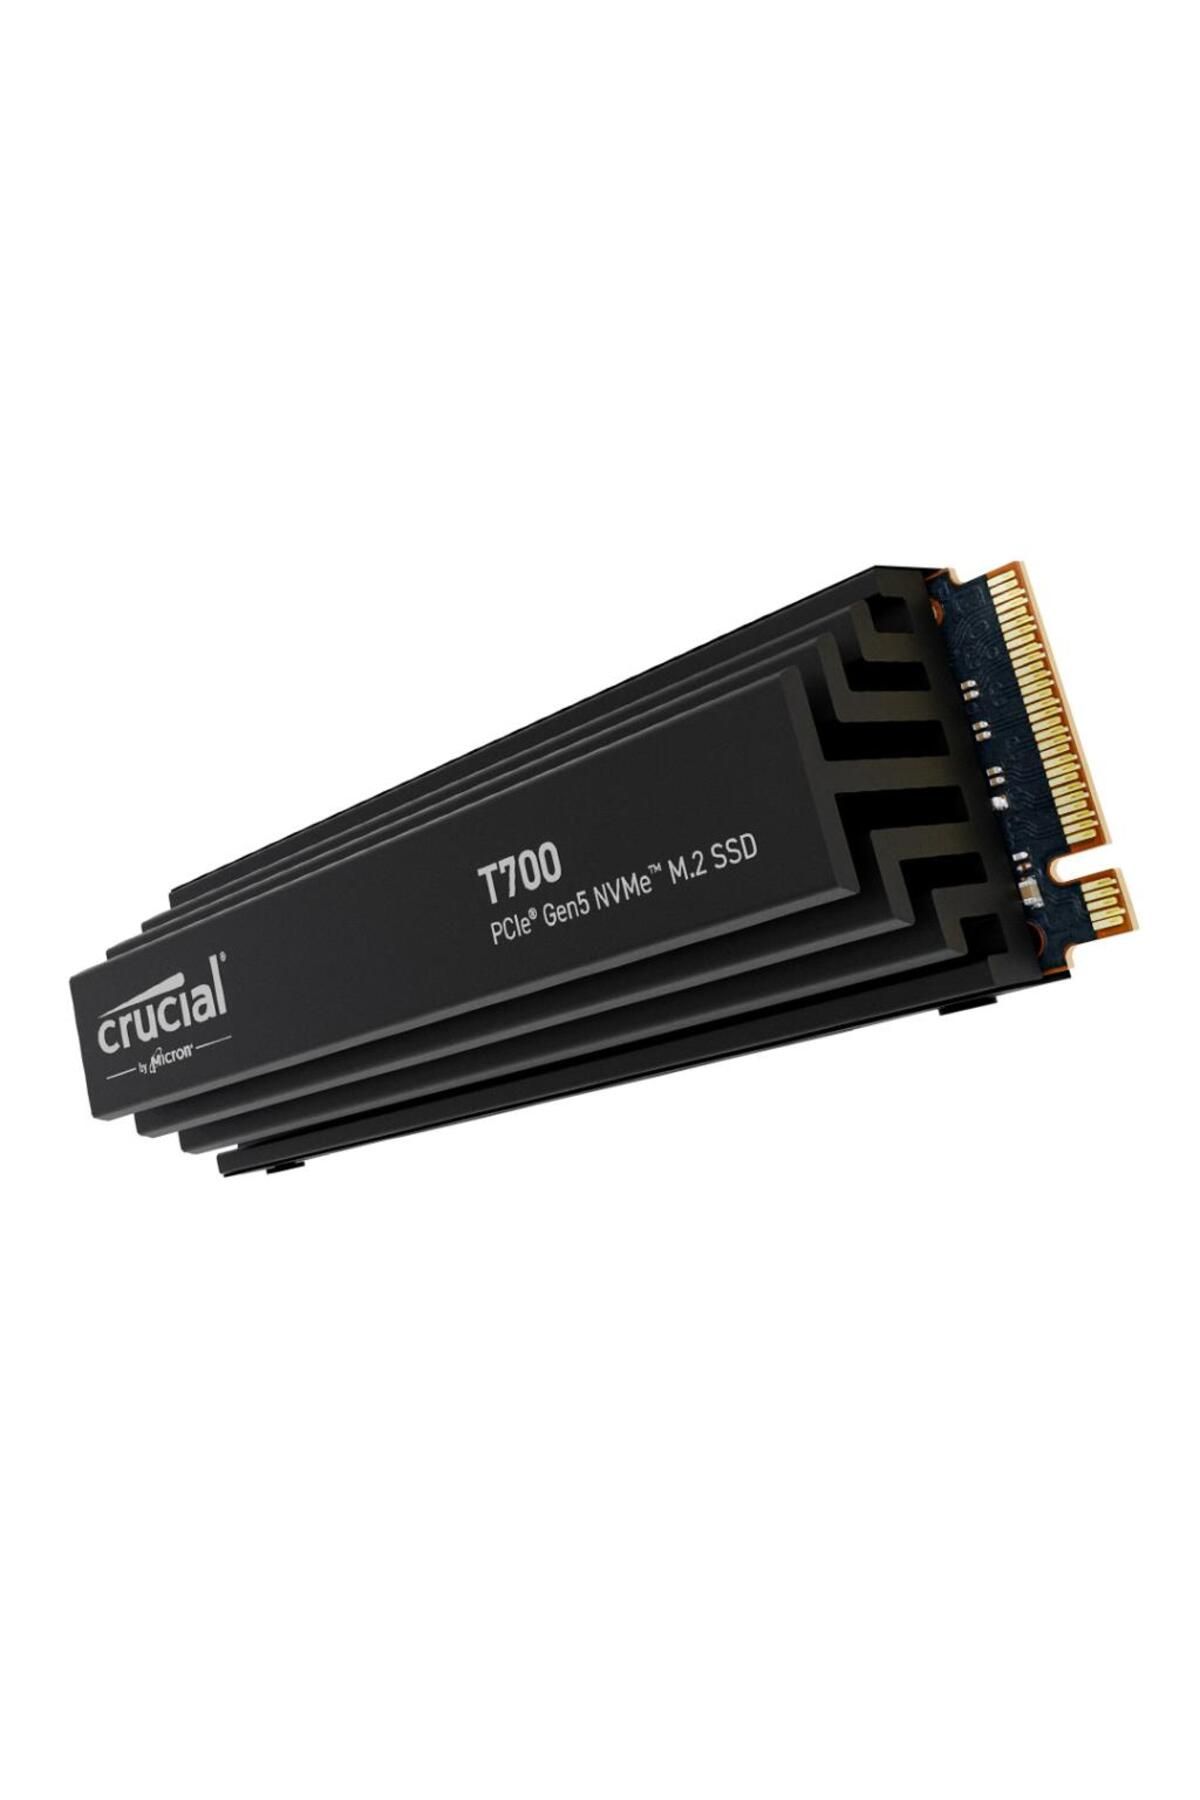 Crucial T700 PRO 1TB PCIe Gen5 NVMe M.2 SSD HEATSINK SOĞUTUCULU ( CT1000T700SSD5 )